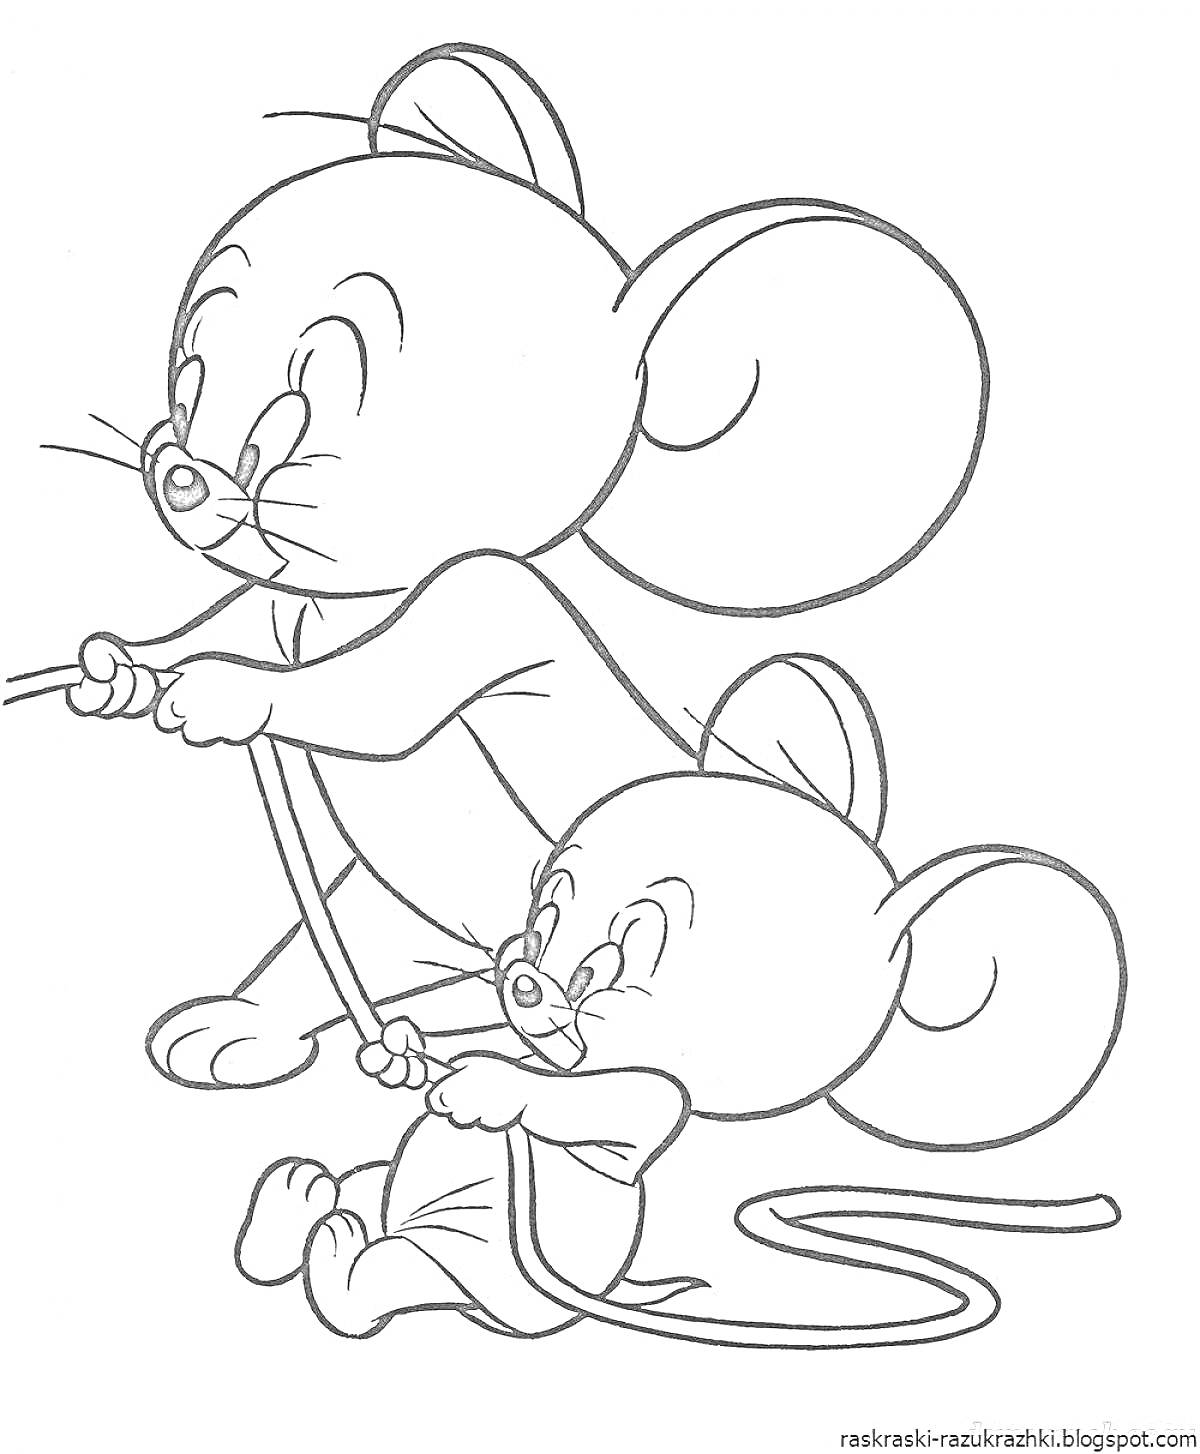 Раскраска Две мышки с веревкой